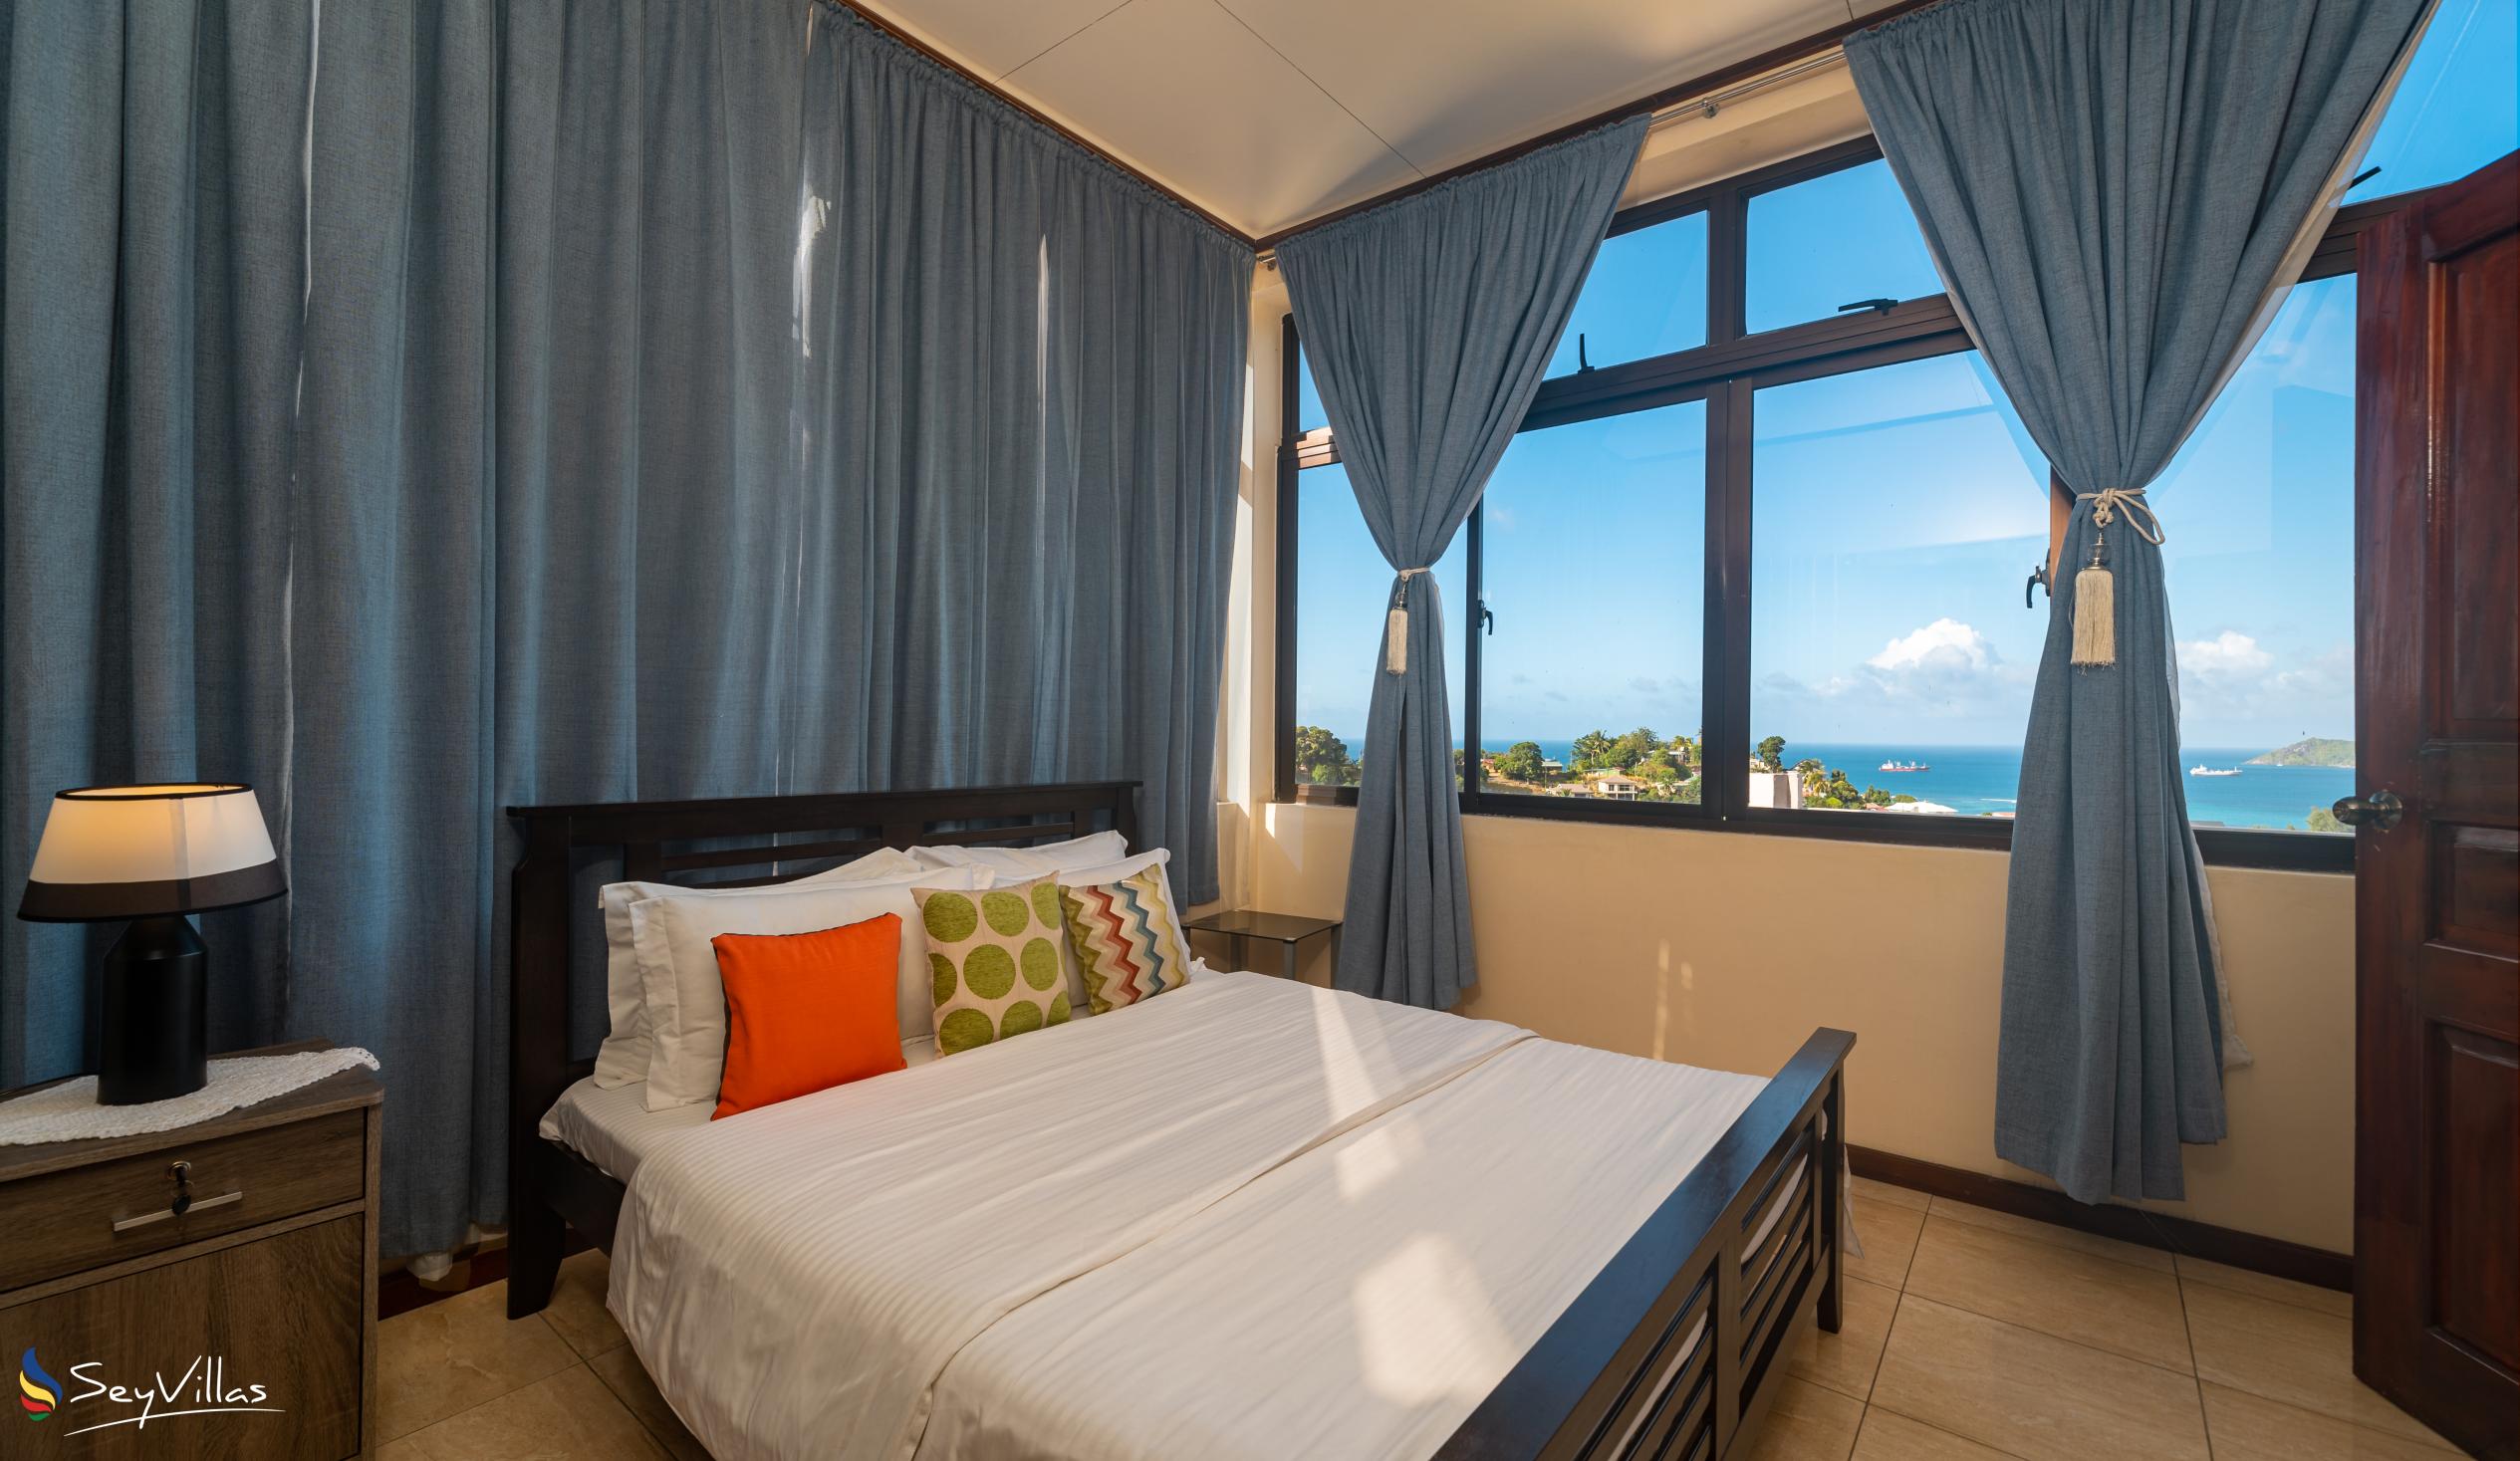 Foto 81: Maison L'Horizon - Appartement 3 chambres Lorizon - Mahé (Seychelles)